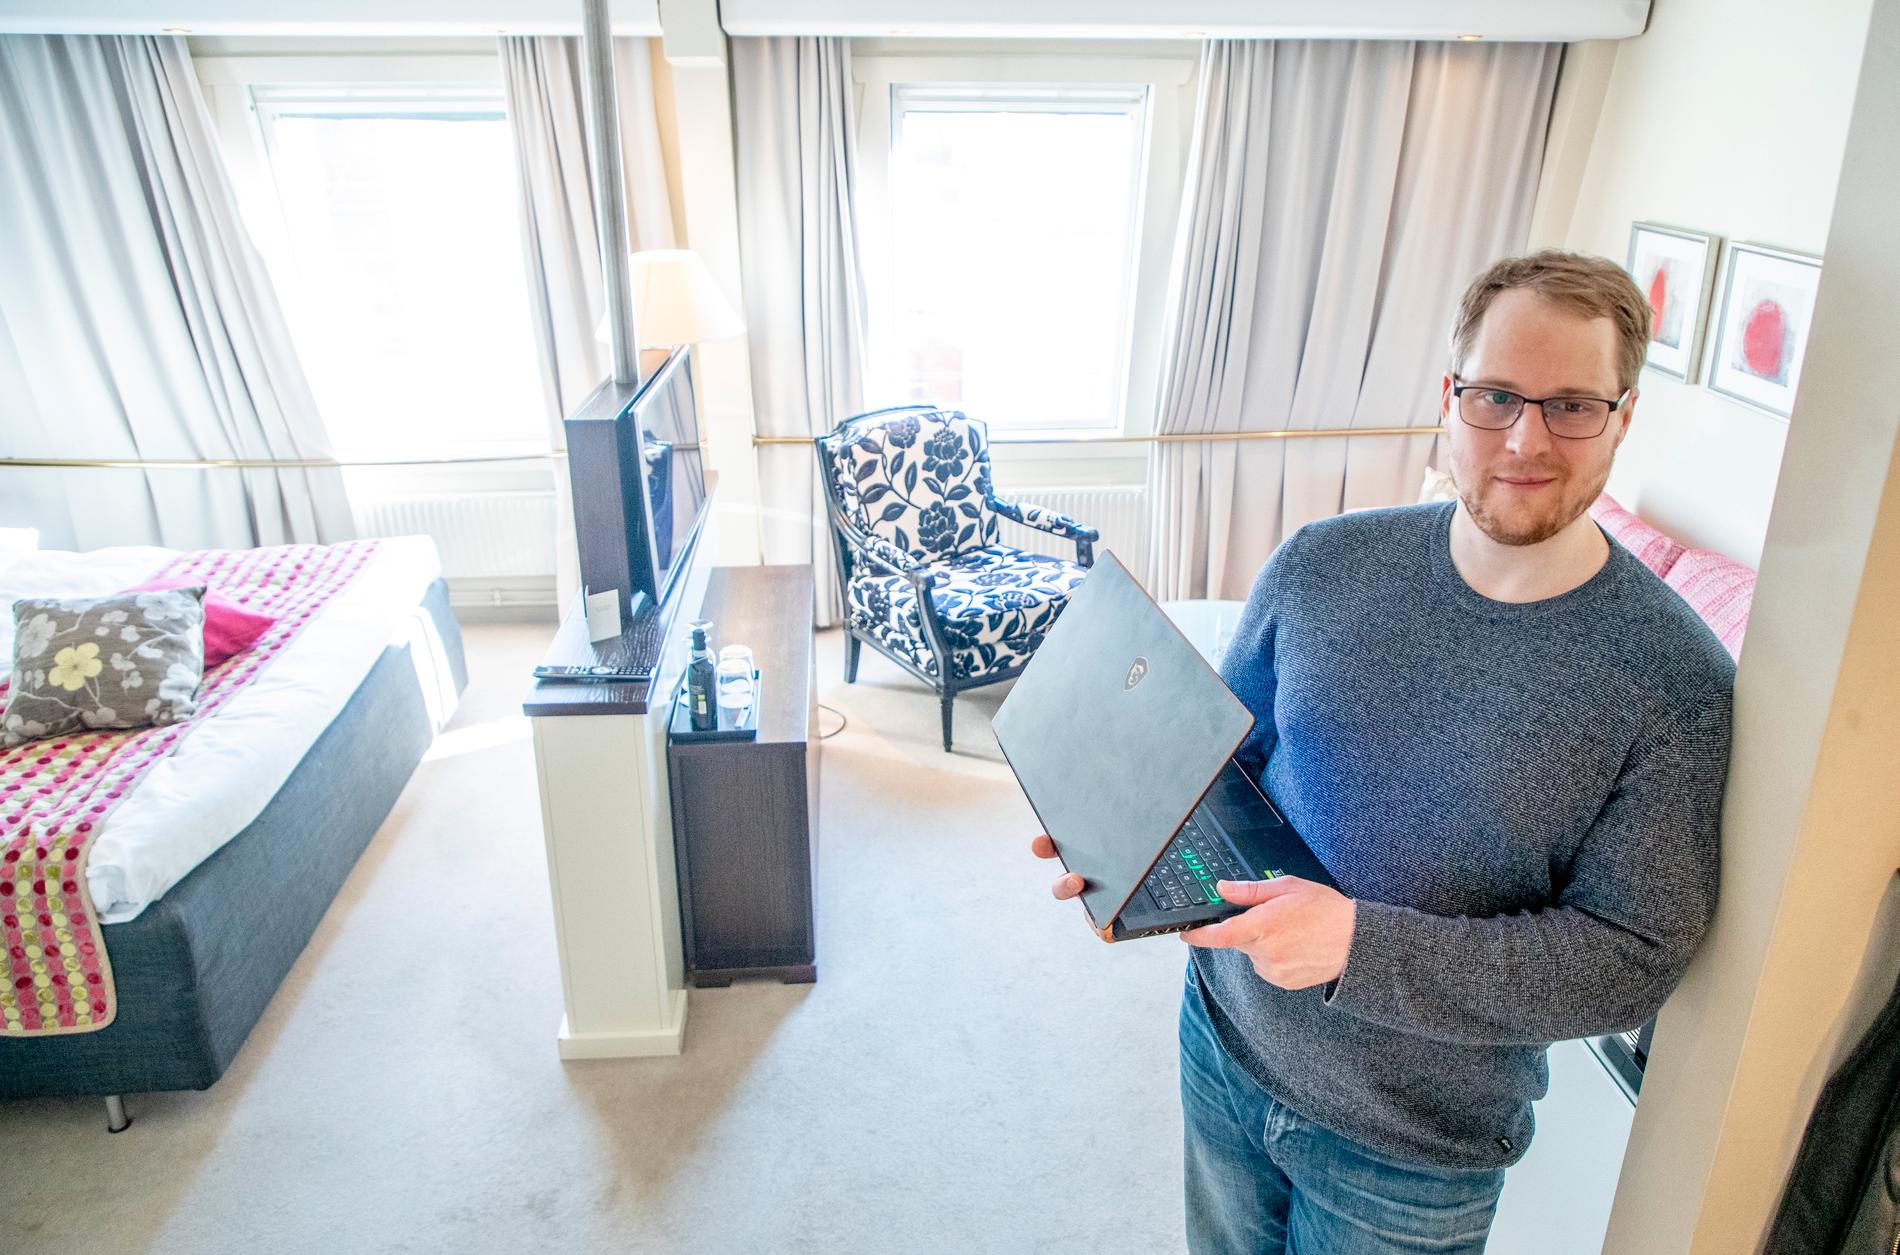 "Det här är prefekt. Dessutom bidrar jag till människor som behöver pengar nu", säger webbutvecklaren Carl som nu huserar i ett deluxerum på ett hotell i centrala Göteborg.